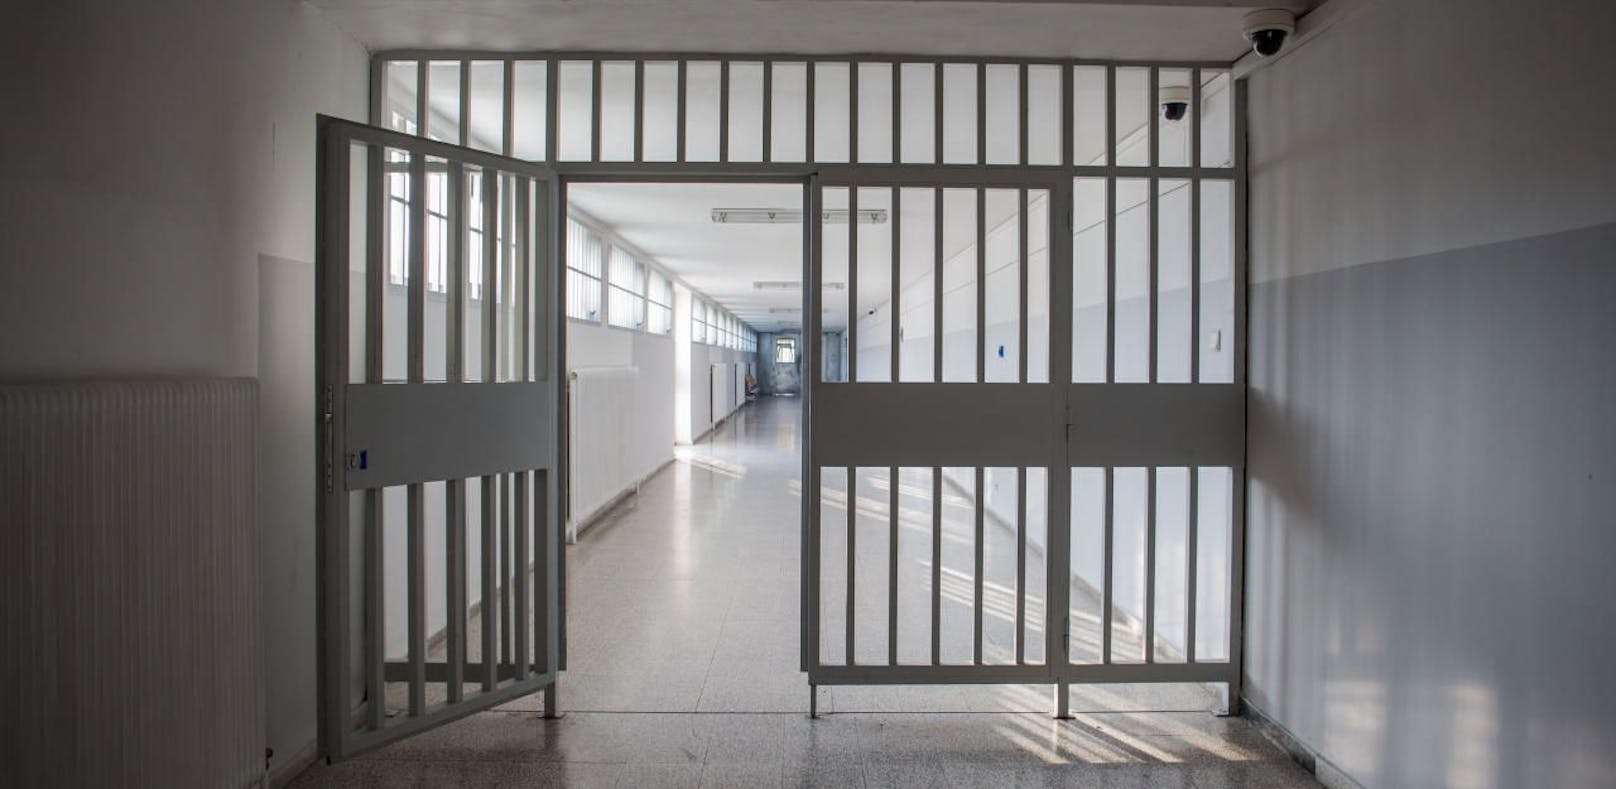 Bei Rauchverbot in Zellen kommt Häftlingsaufstand